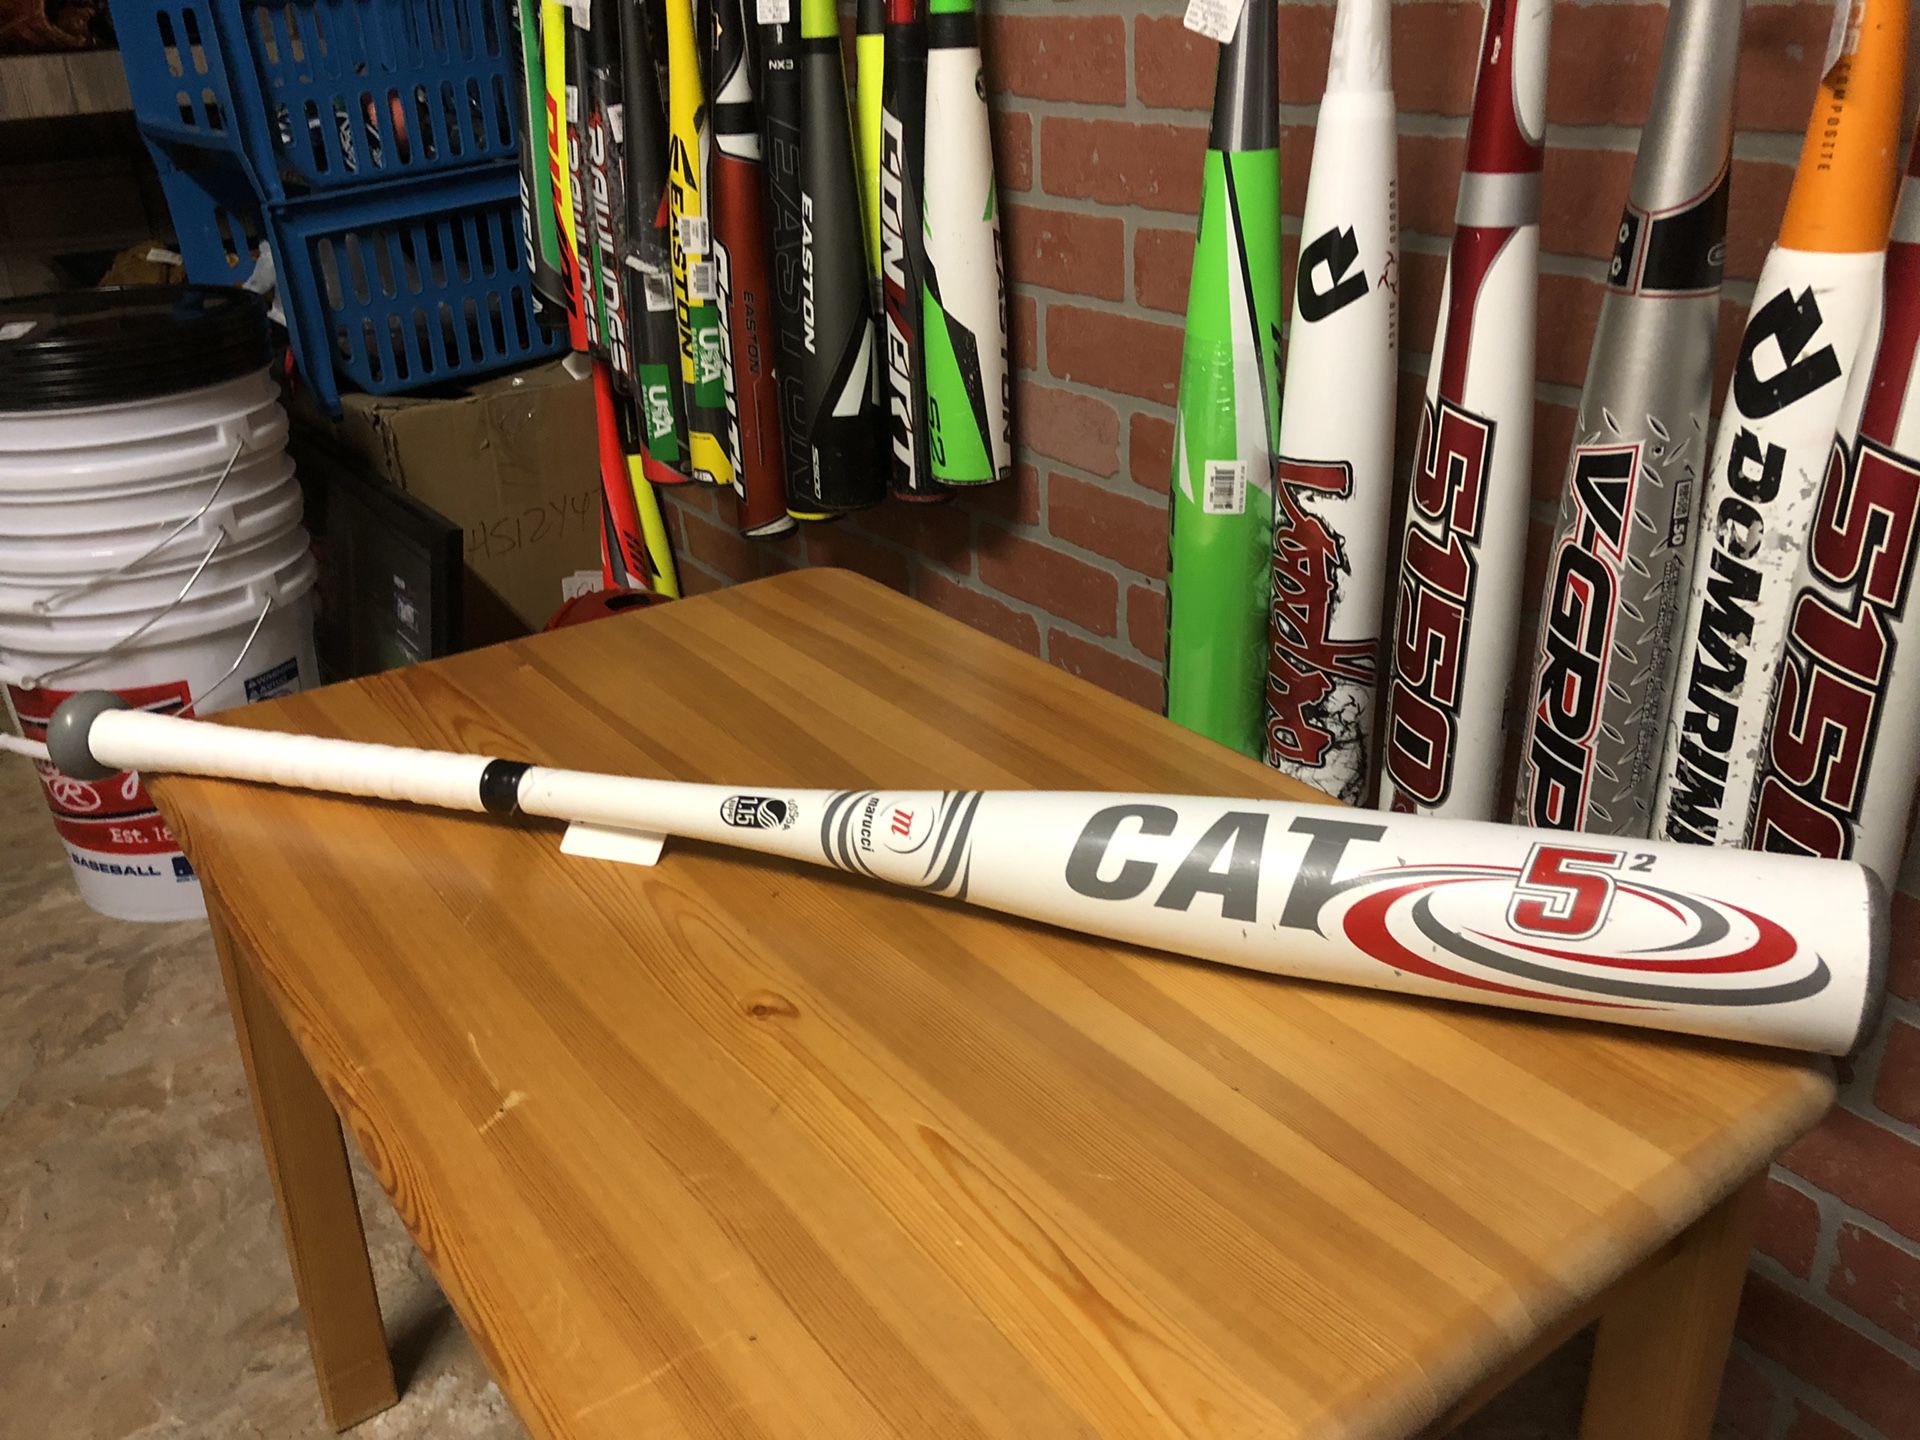 Marucci Cat 5 Baseball bat 32”27oz ( drop 5)